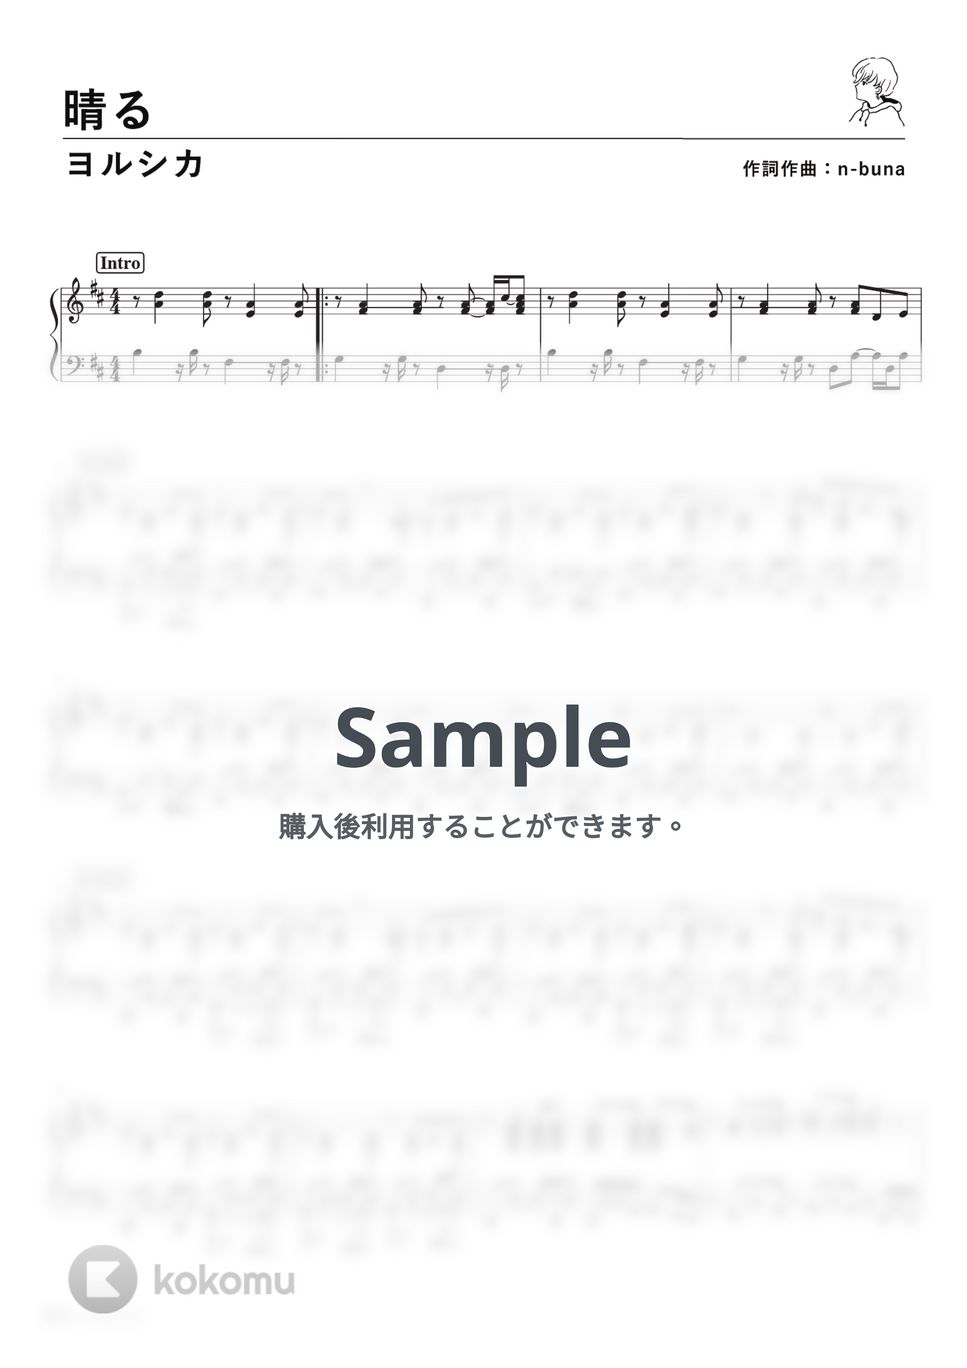 ヨルシカ - 晴る (PianoSolo) by 深根